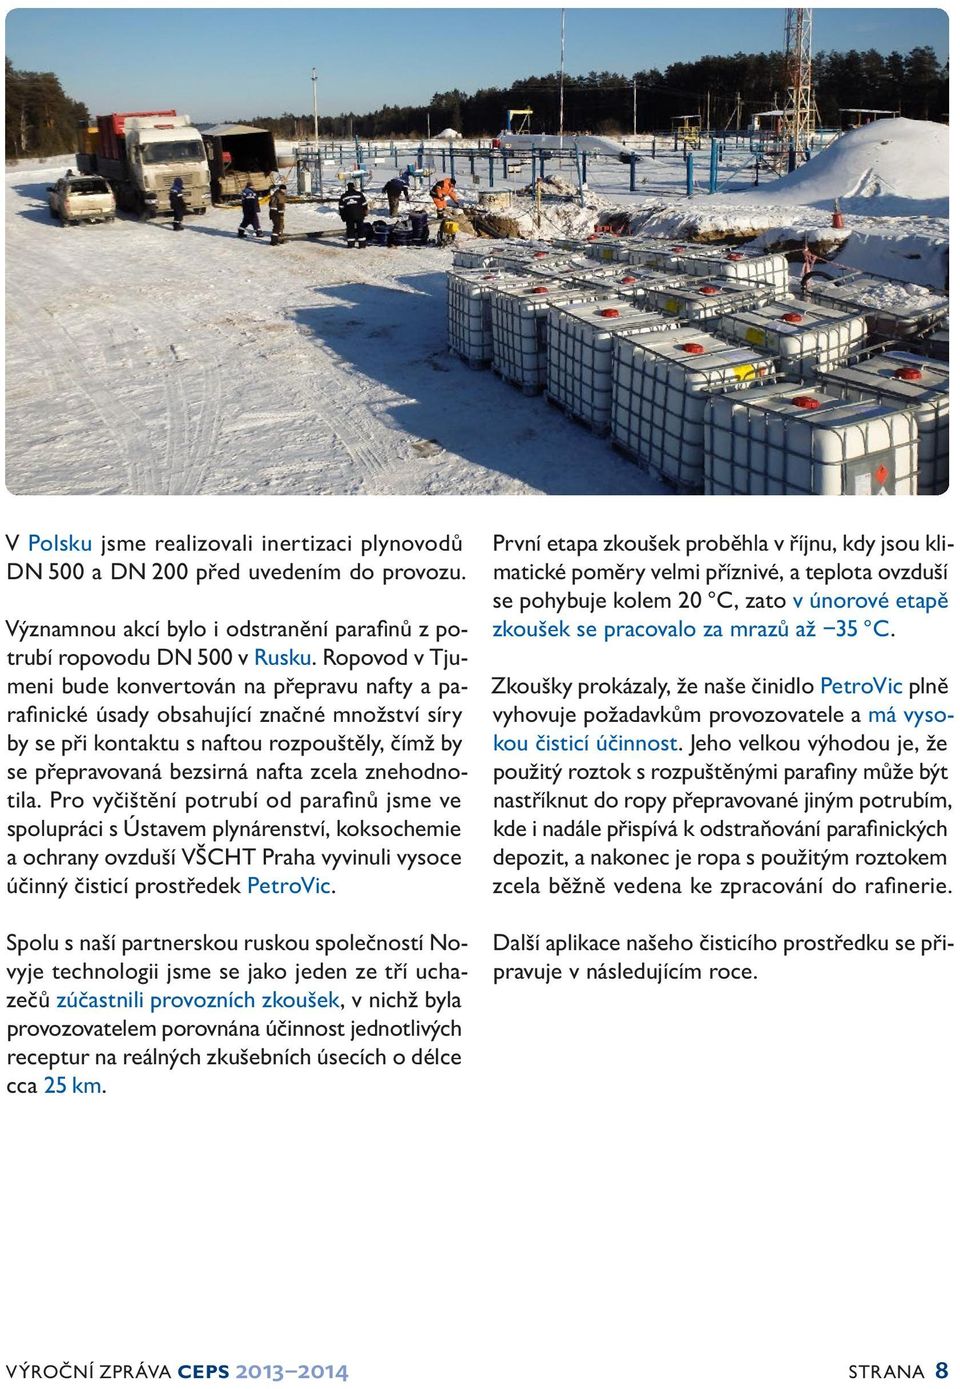 znehodnotila. Pro vyčištění potrubí od parafinů jsme ve spolupráci s Ústavem plynárenství, koksochemie a ochrany ovzduší VŠCHT Praha vyvinuli vysoce účinný čisticí prostředek PetroVic.